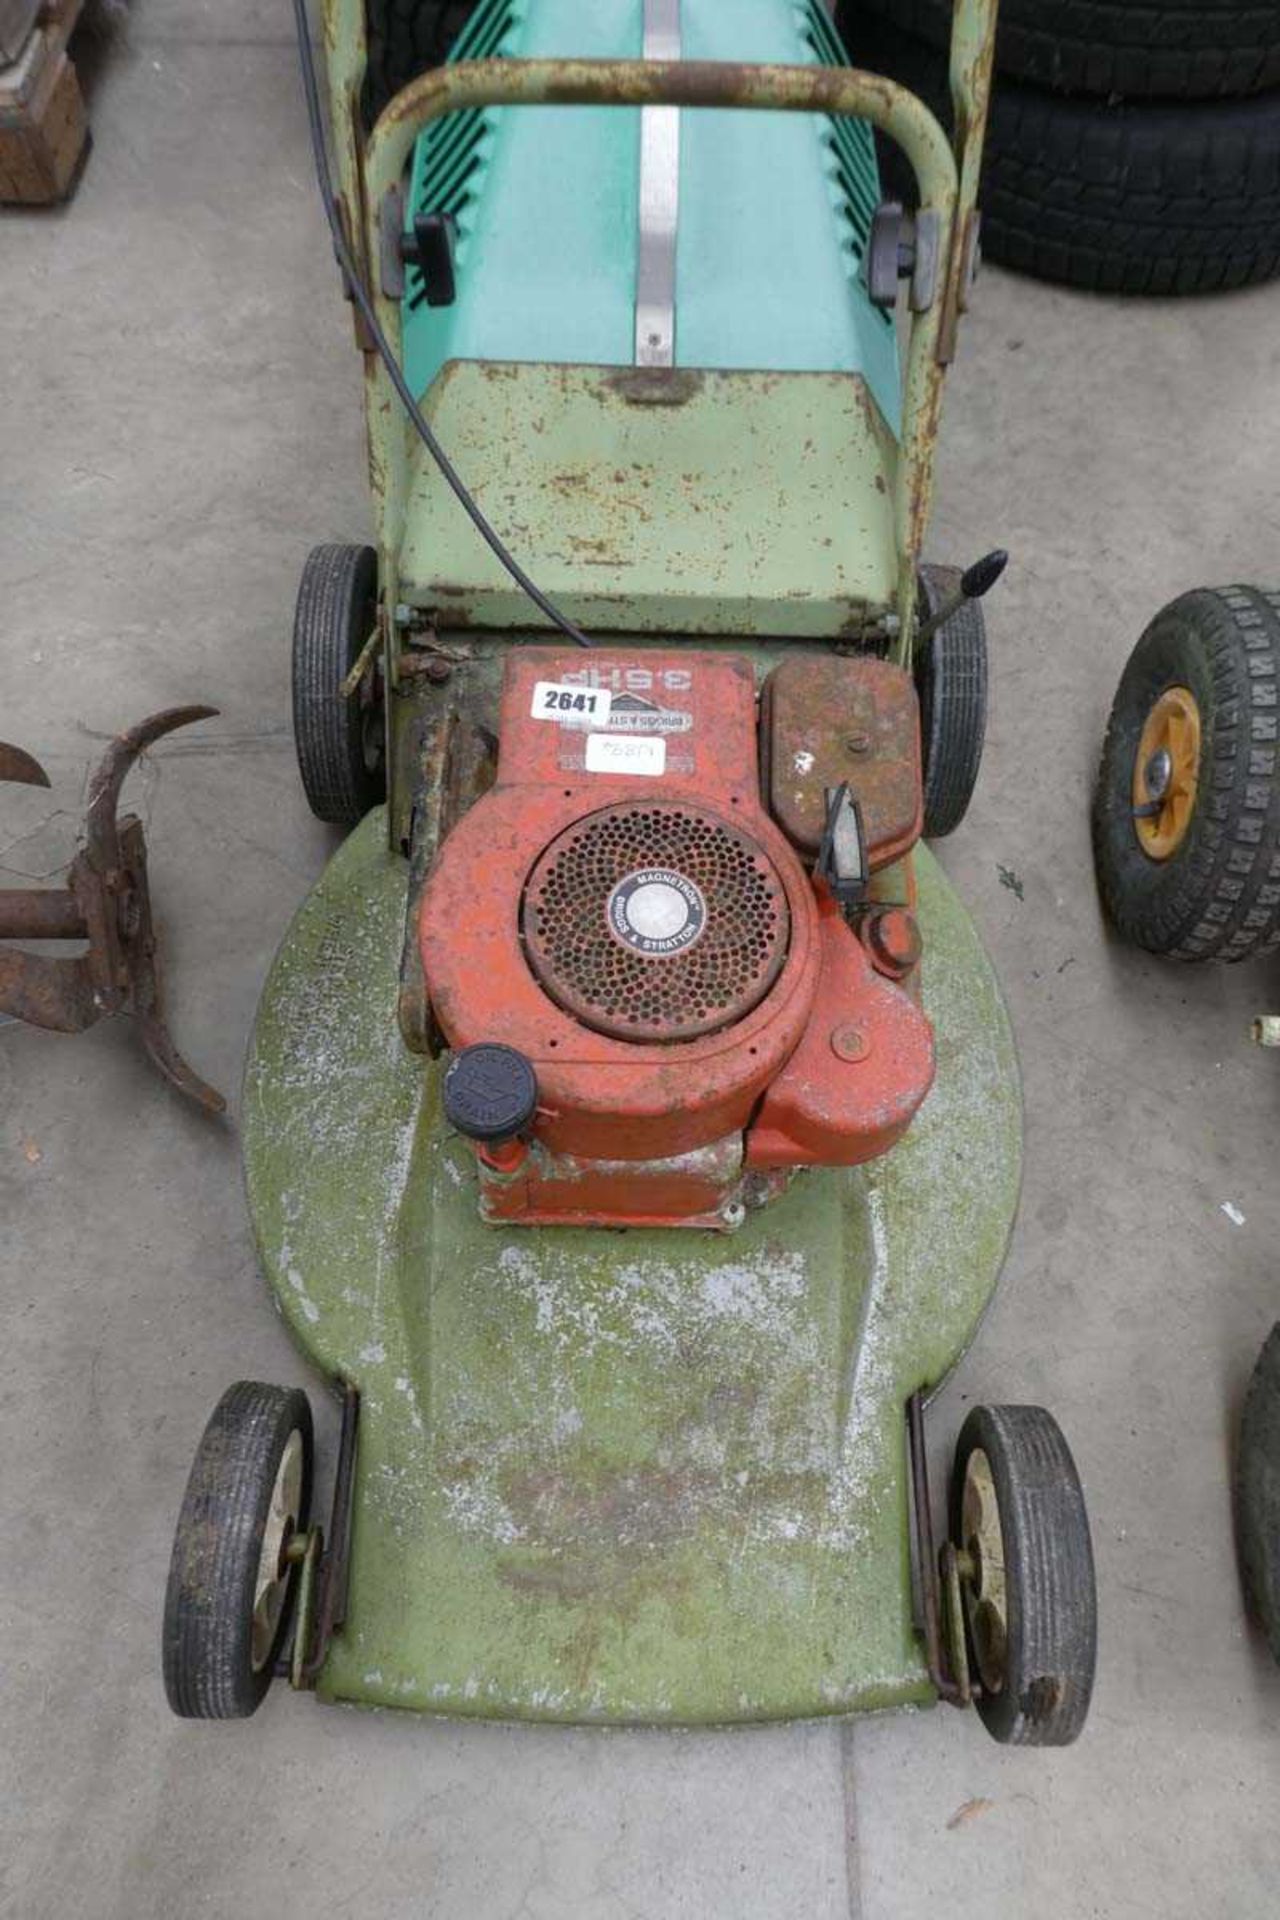 Vintage petrol lawnmower - Image 2 of 2